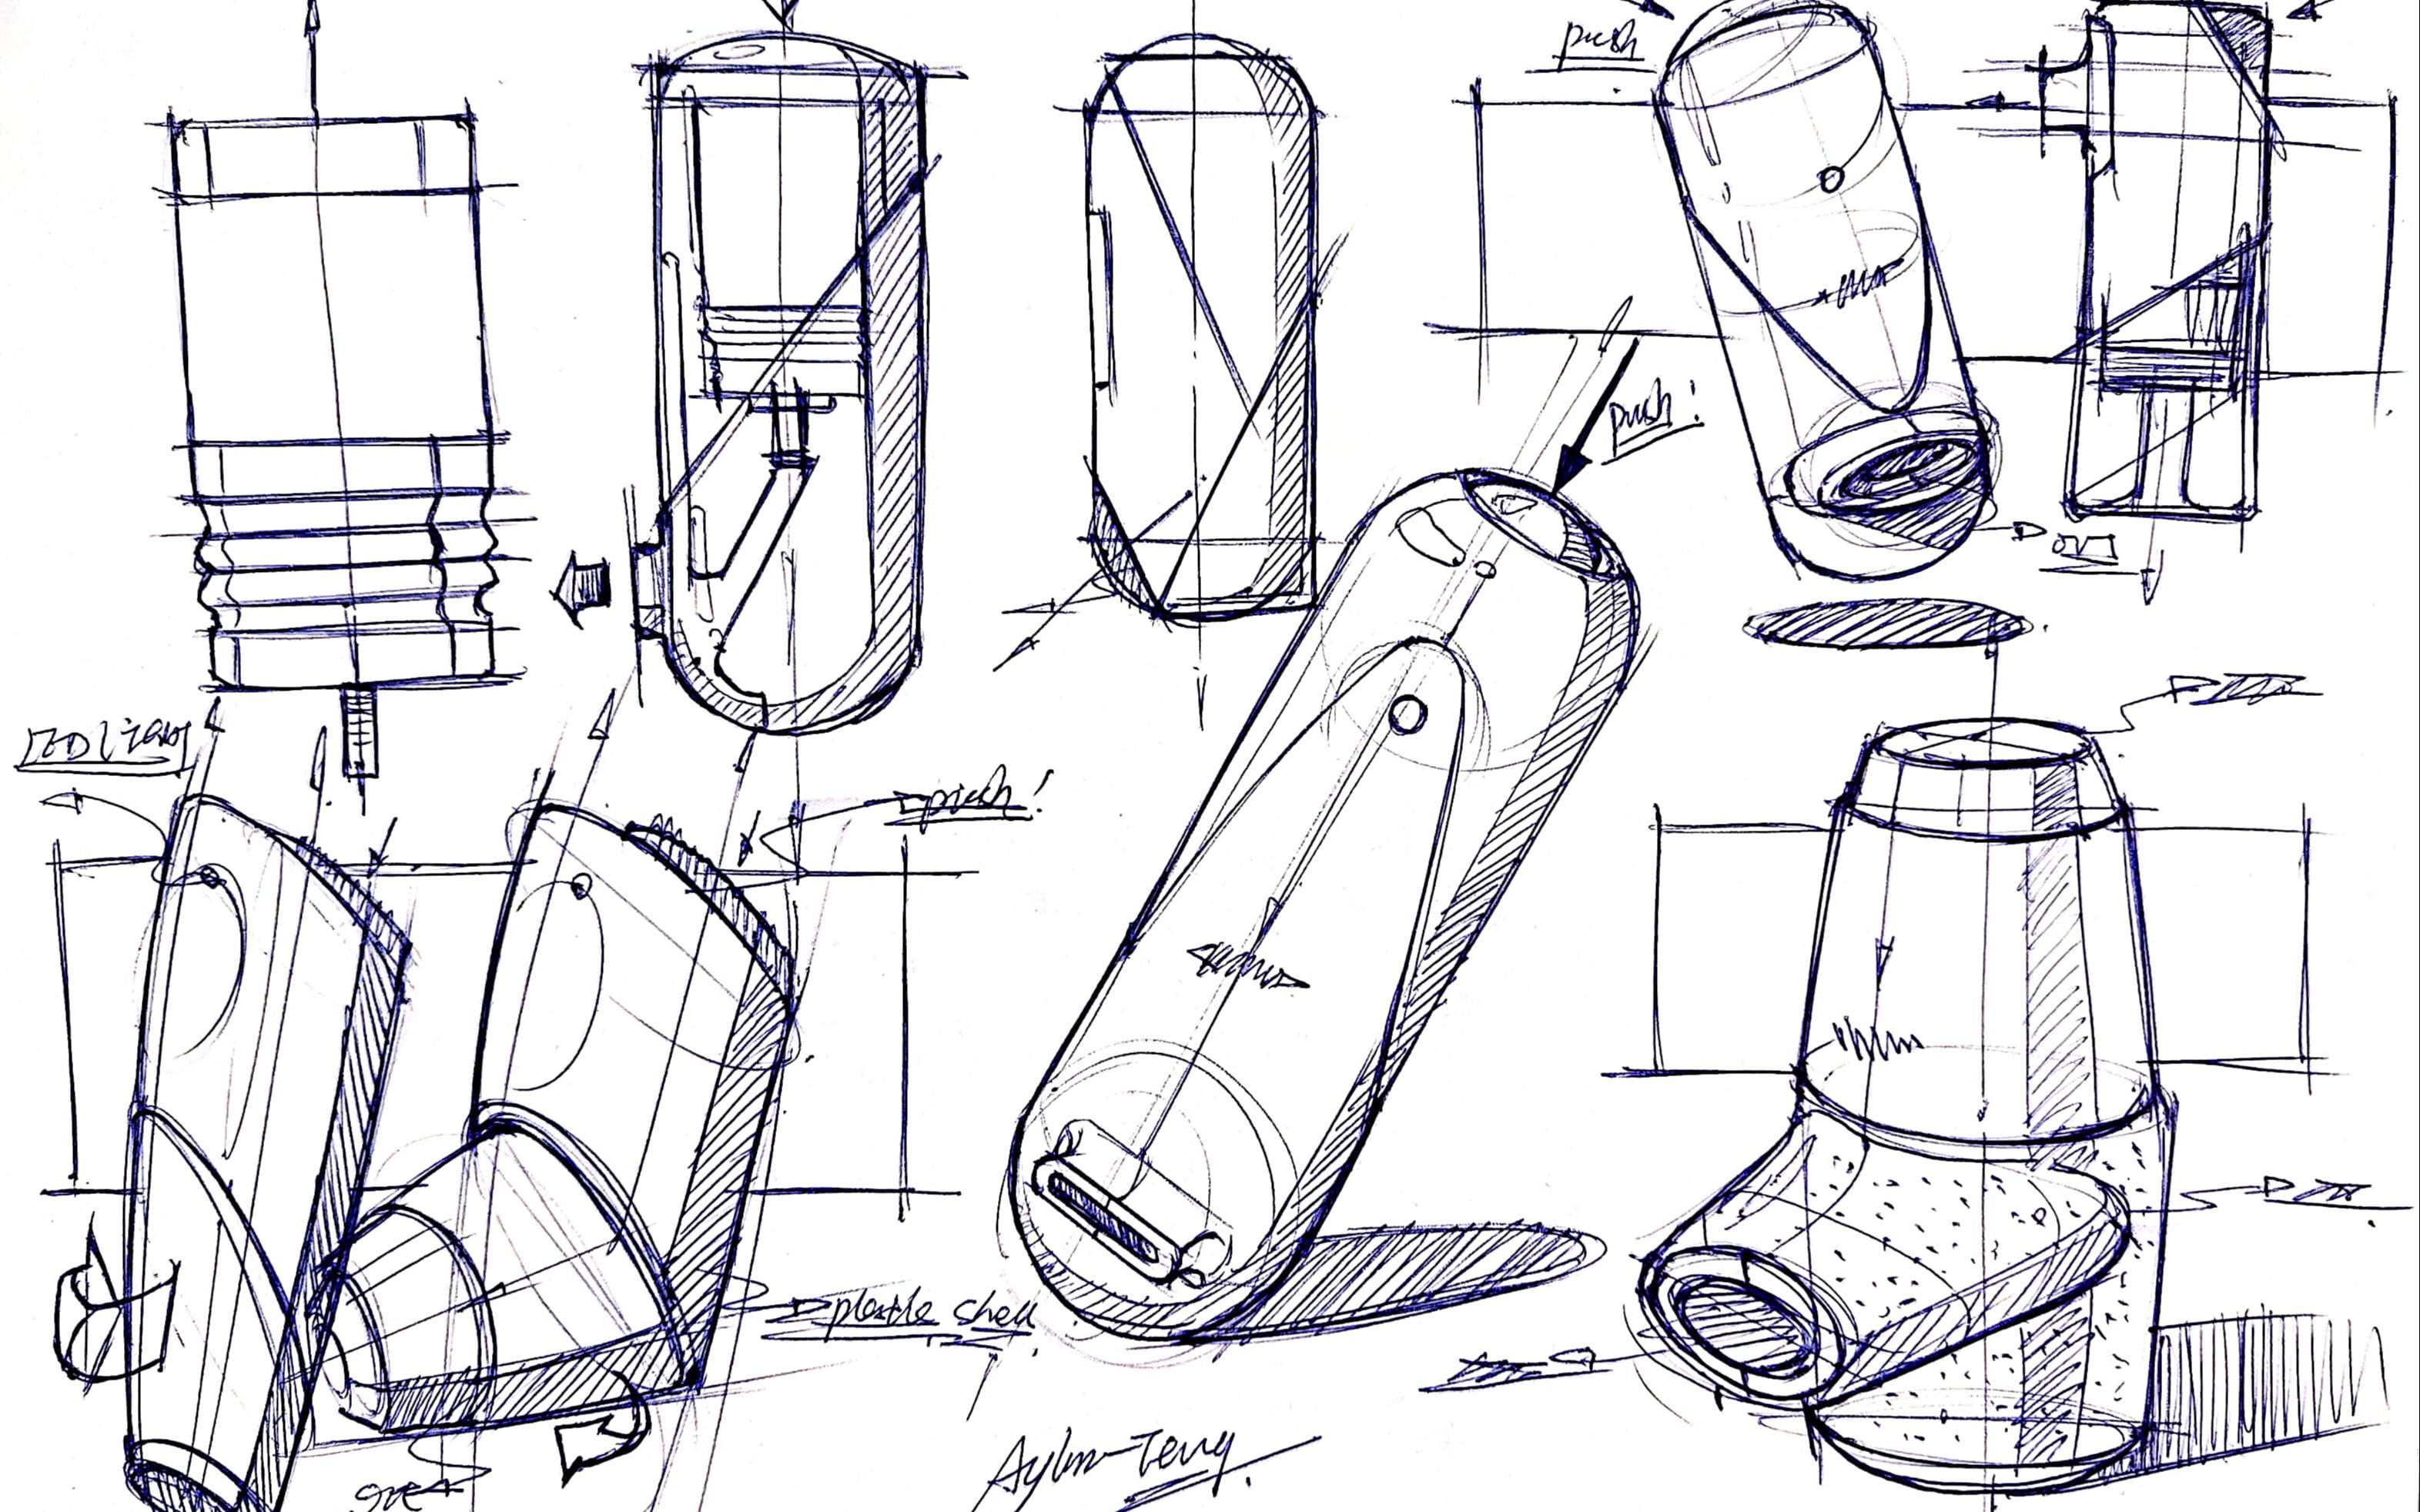 【工业产品设计手绘】雾化吸入器积累圆珠笔绘制草图线稿(2p)